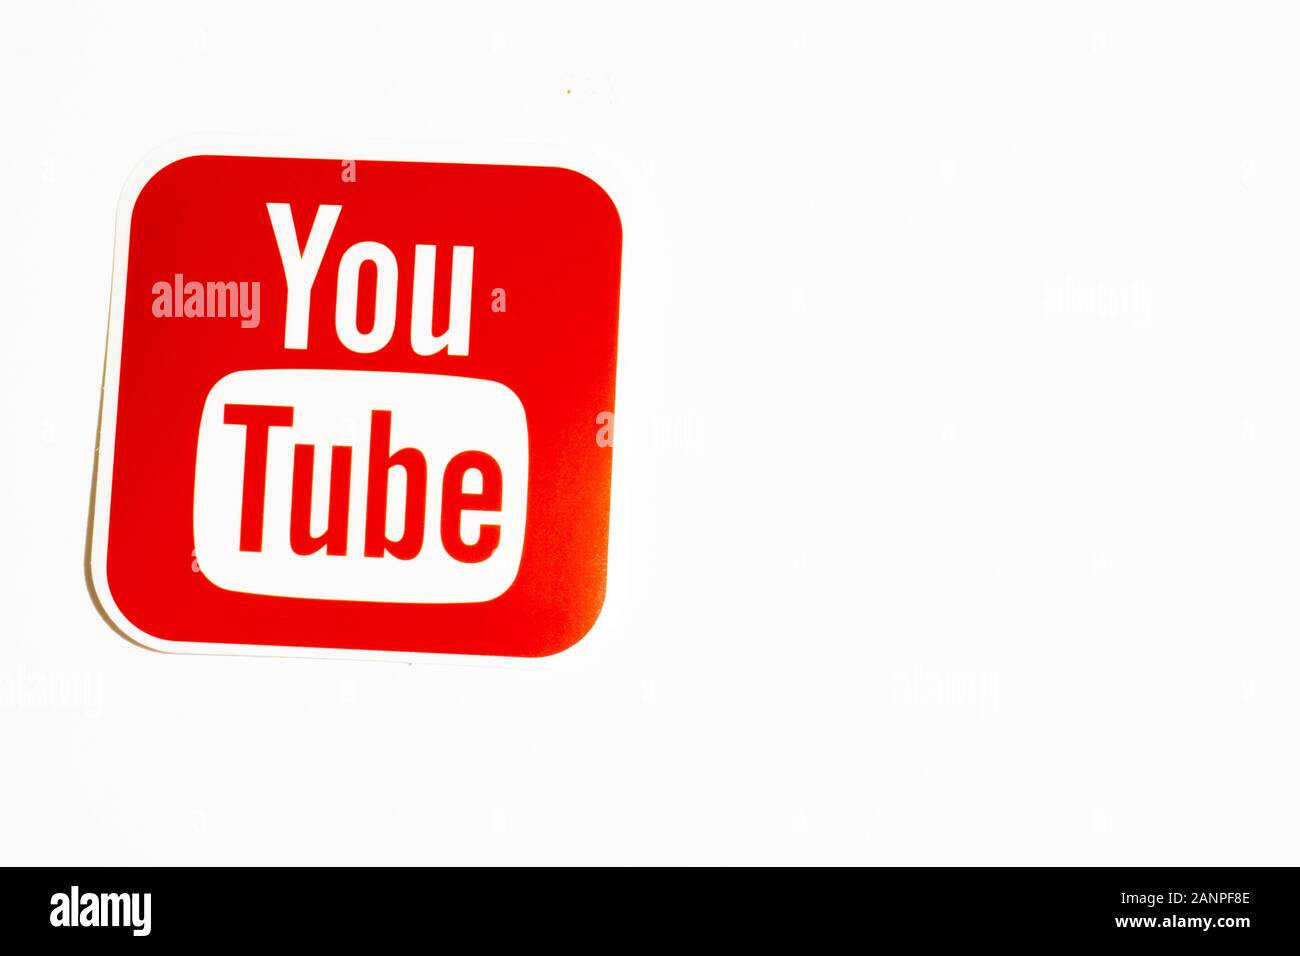 Los Angeles, Californie, États-Unis - 17 janvier 2020: Logo YouTube sur fond blanc avec espace de copie. Icône des médias sociaux, éditorial illustratif Banque D'Images